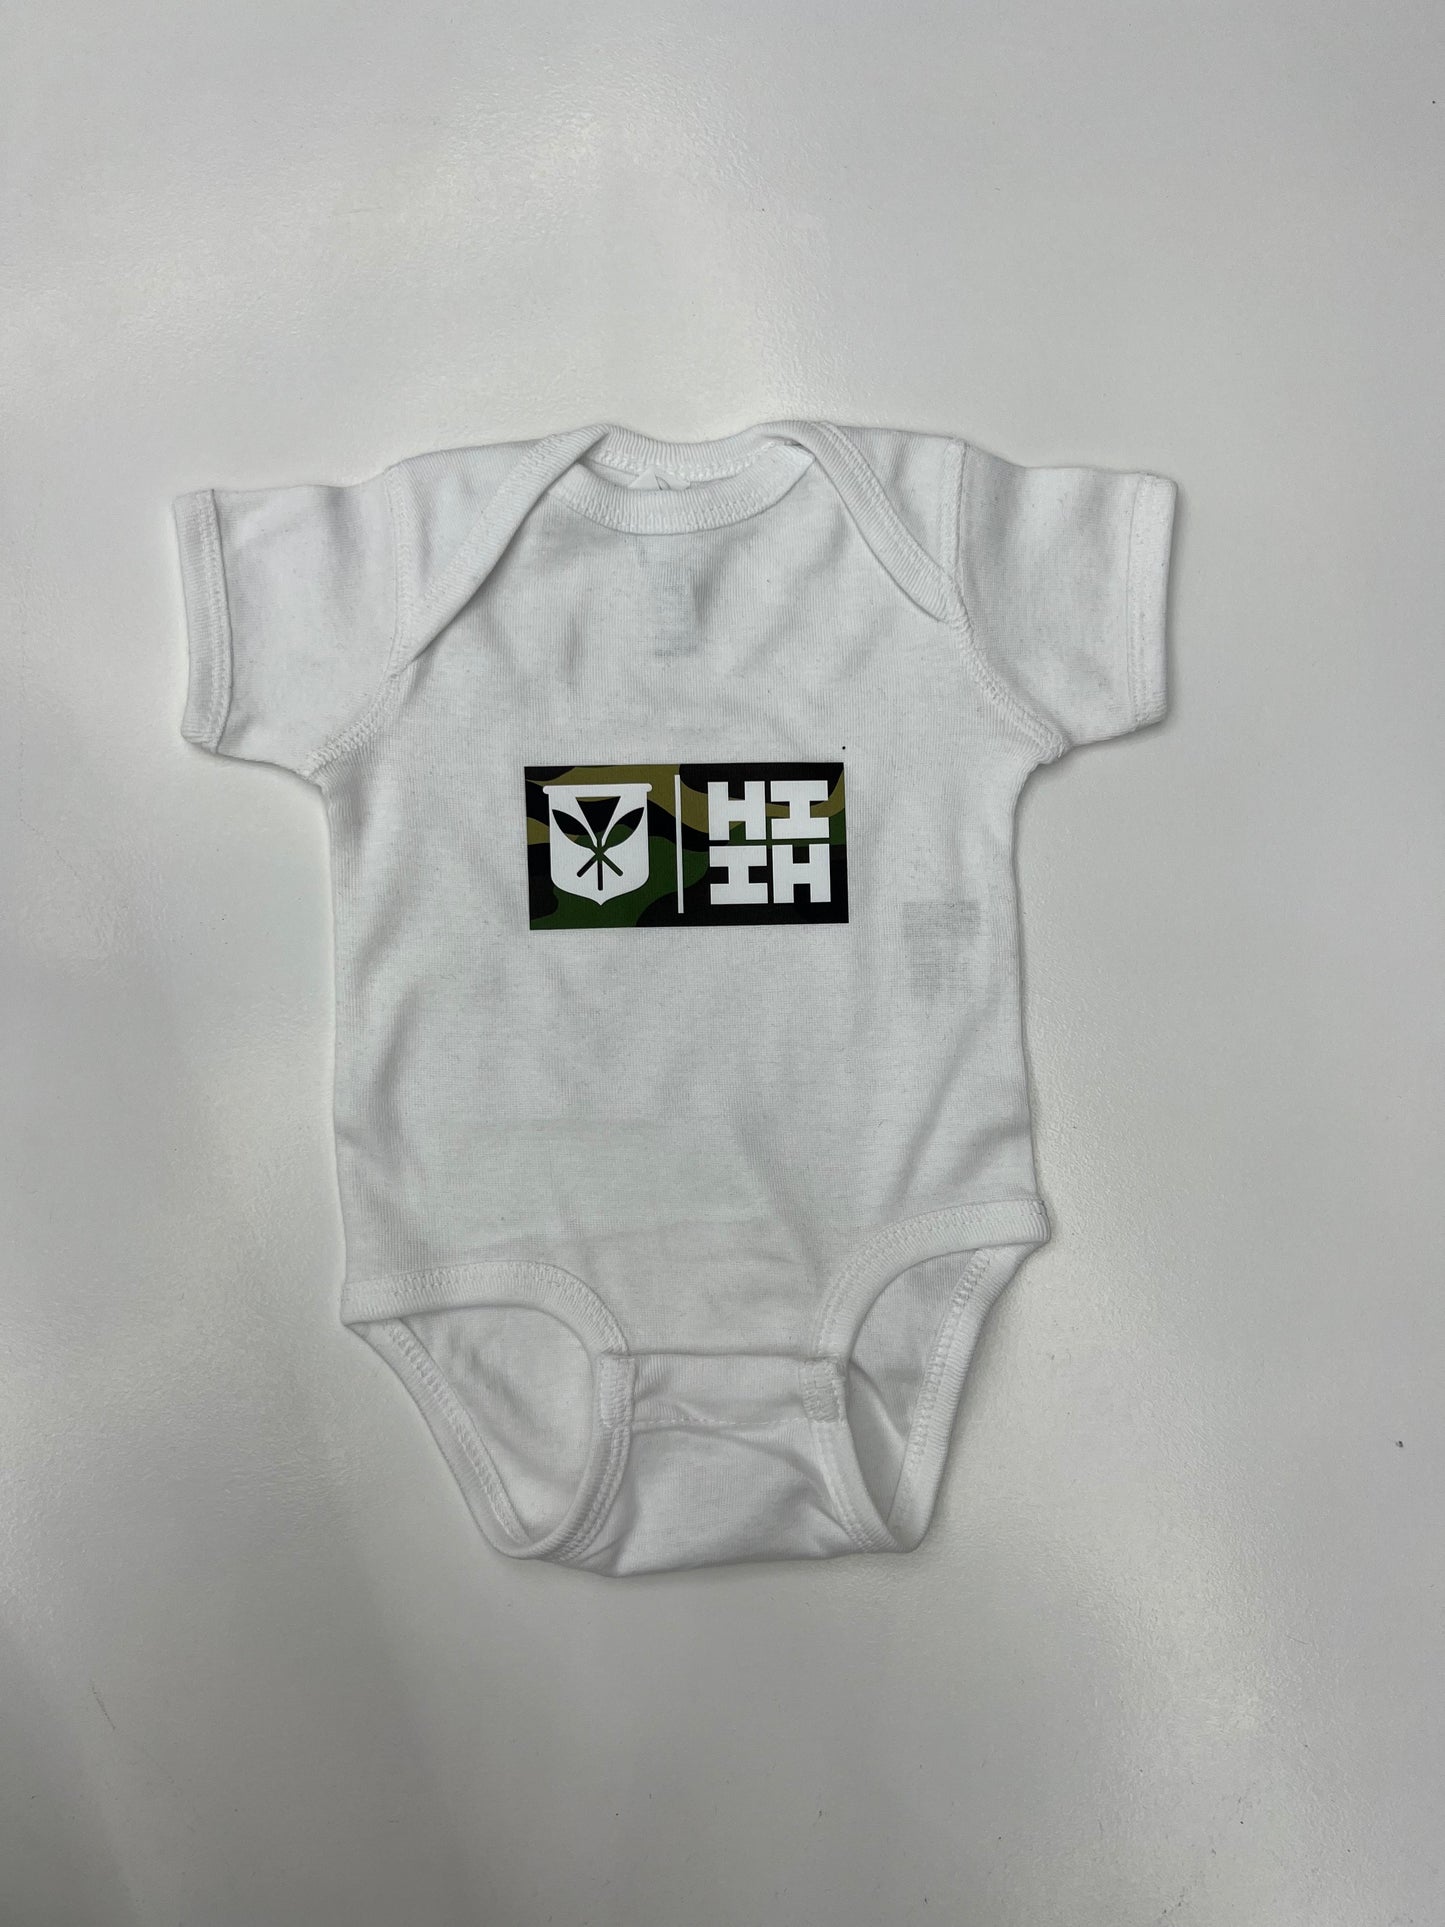 Toddler Simple Logo Onesie - White/Camo